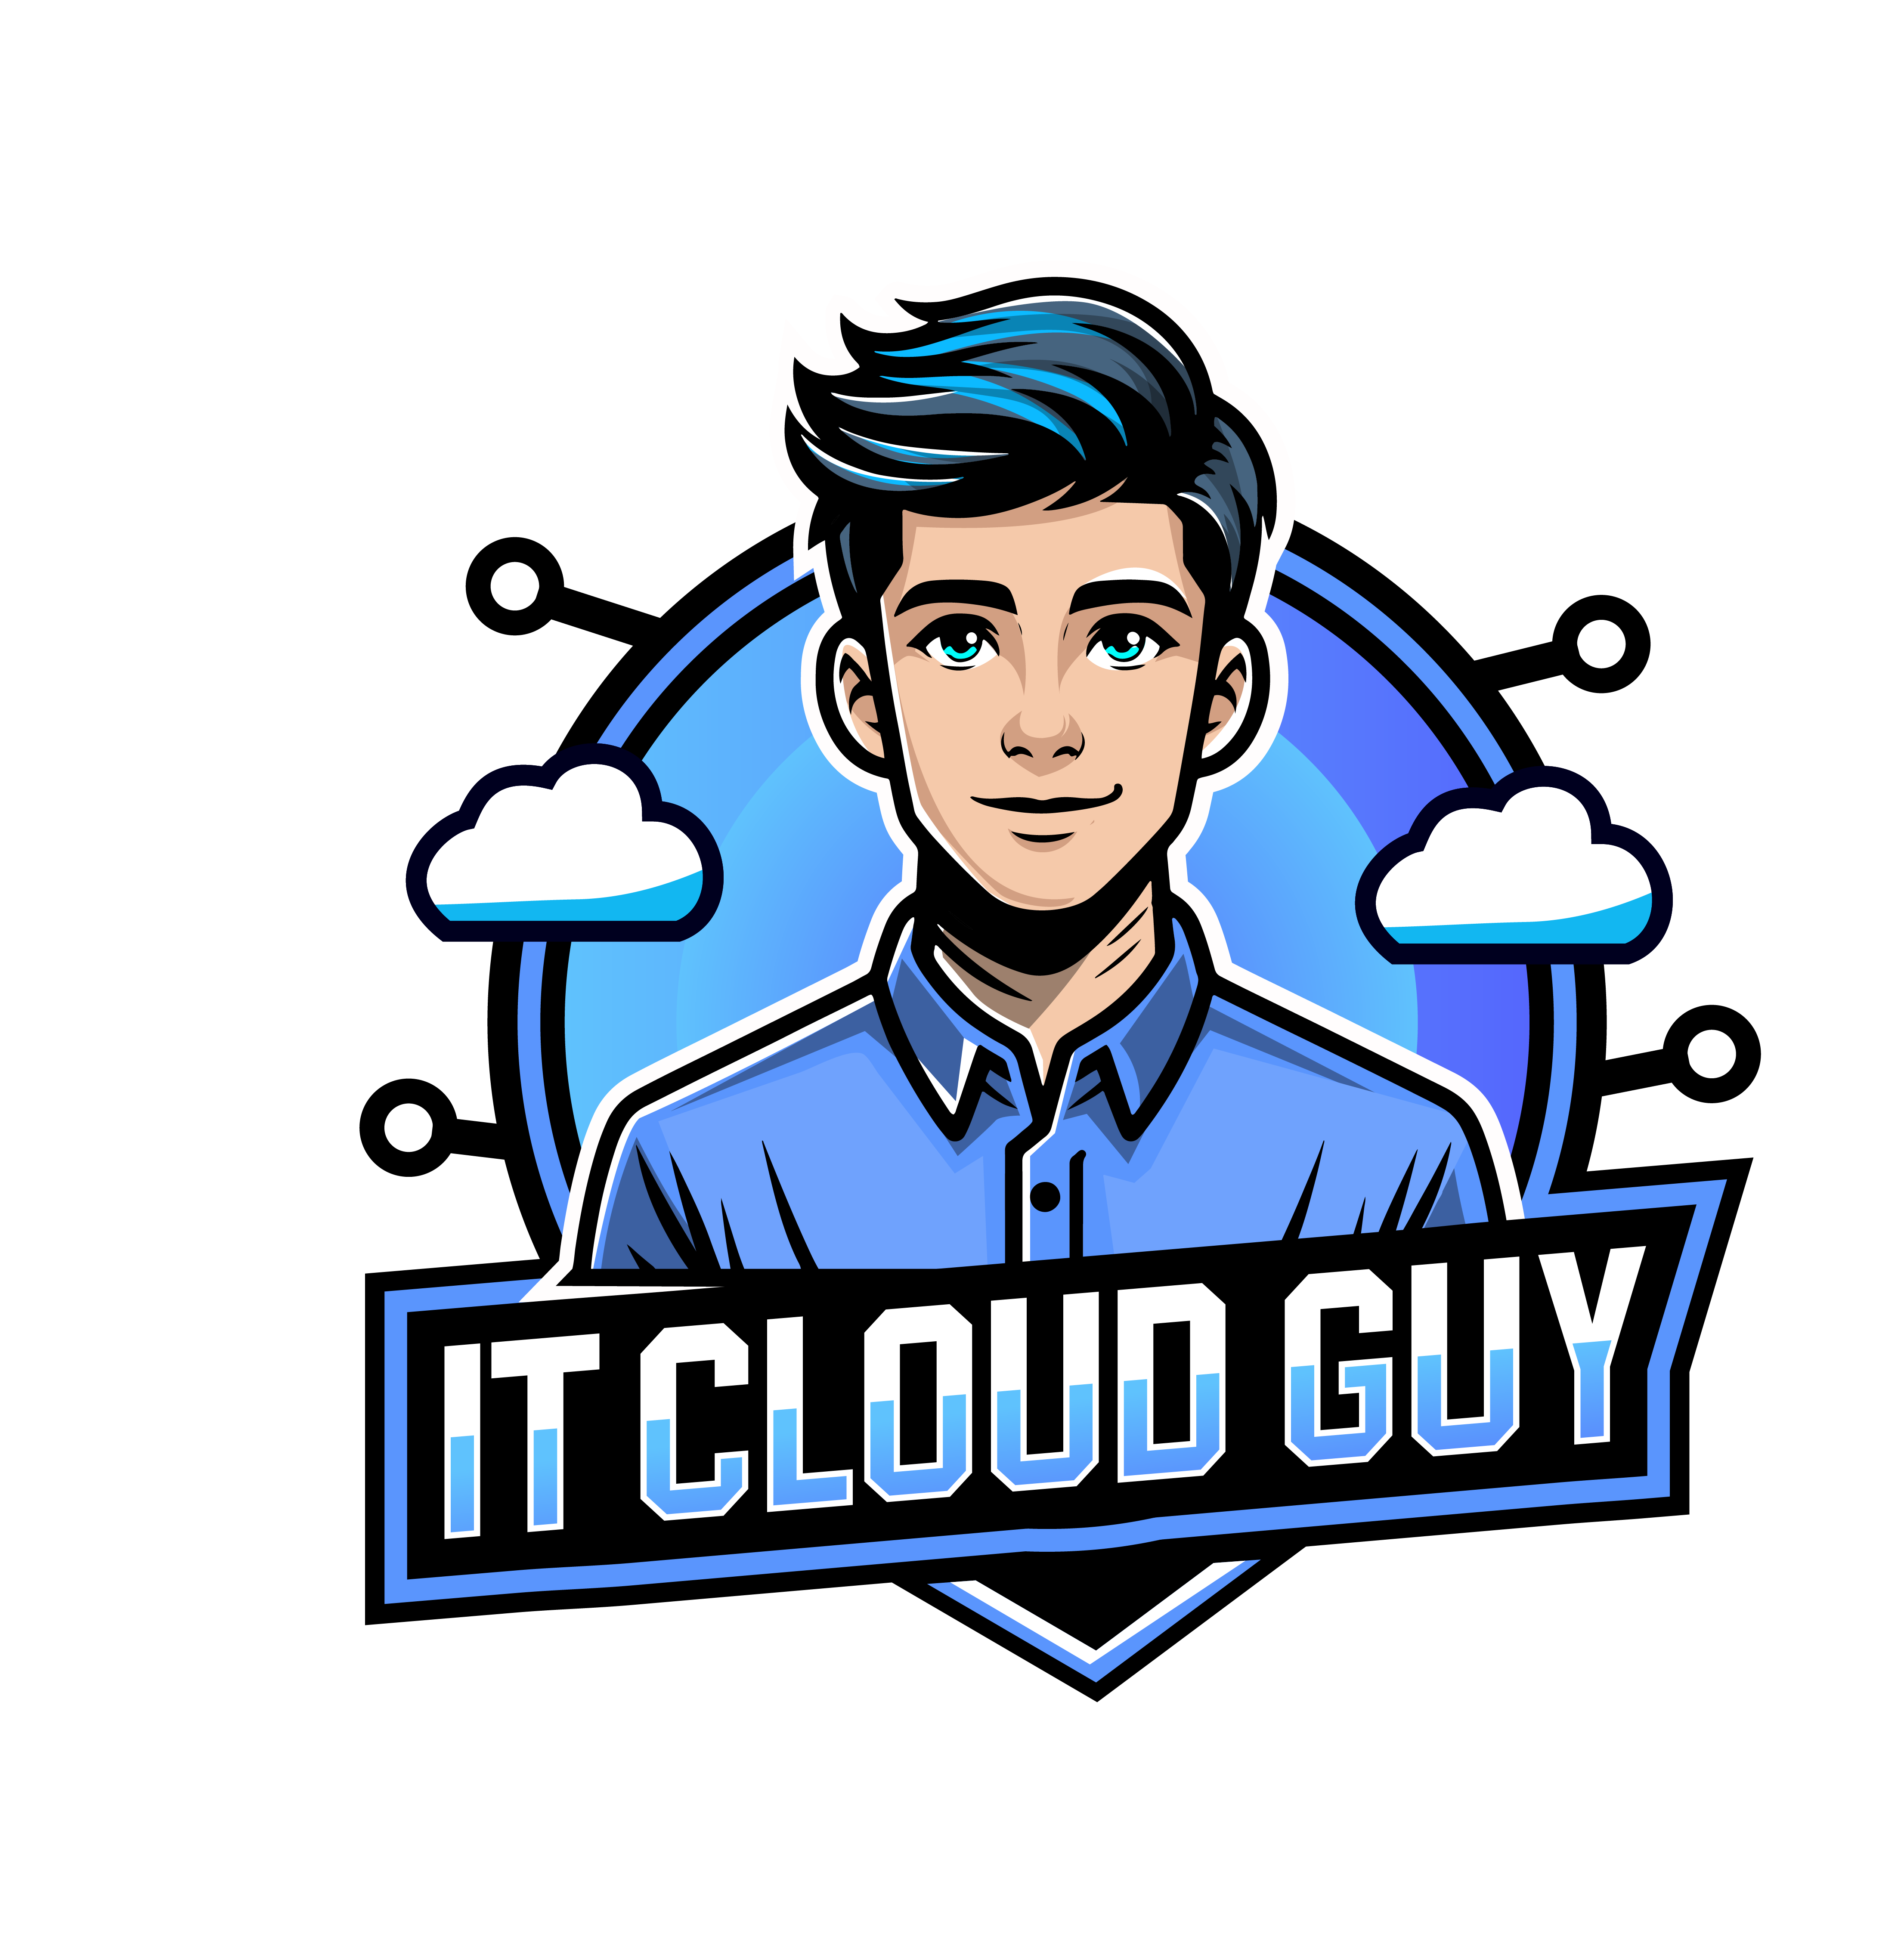 IT Cloud Guy